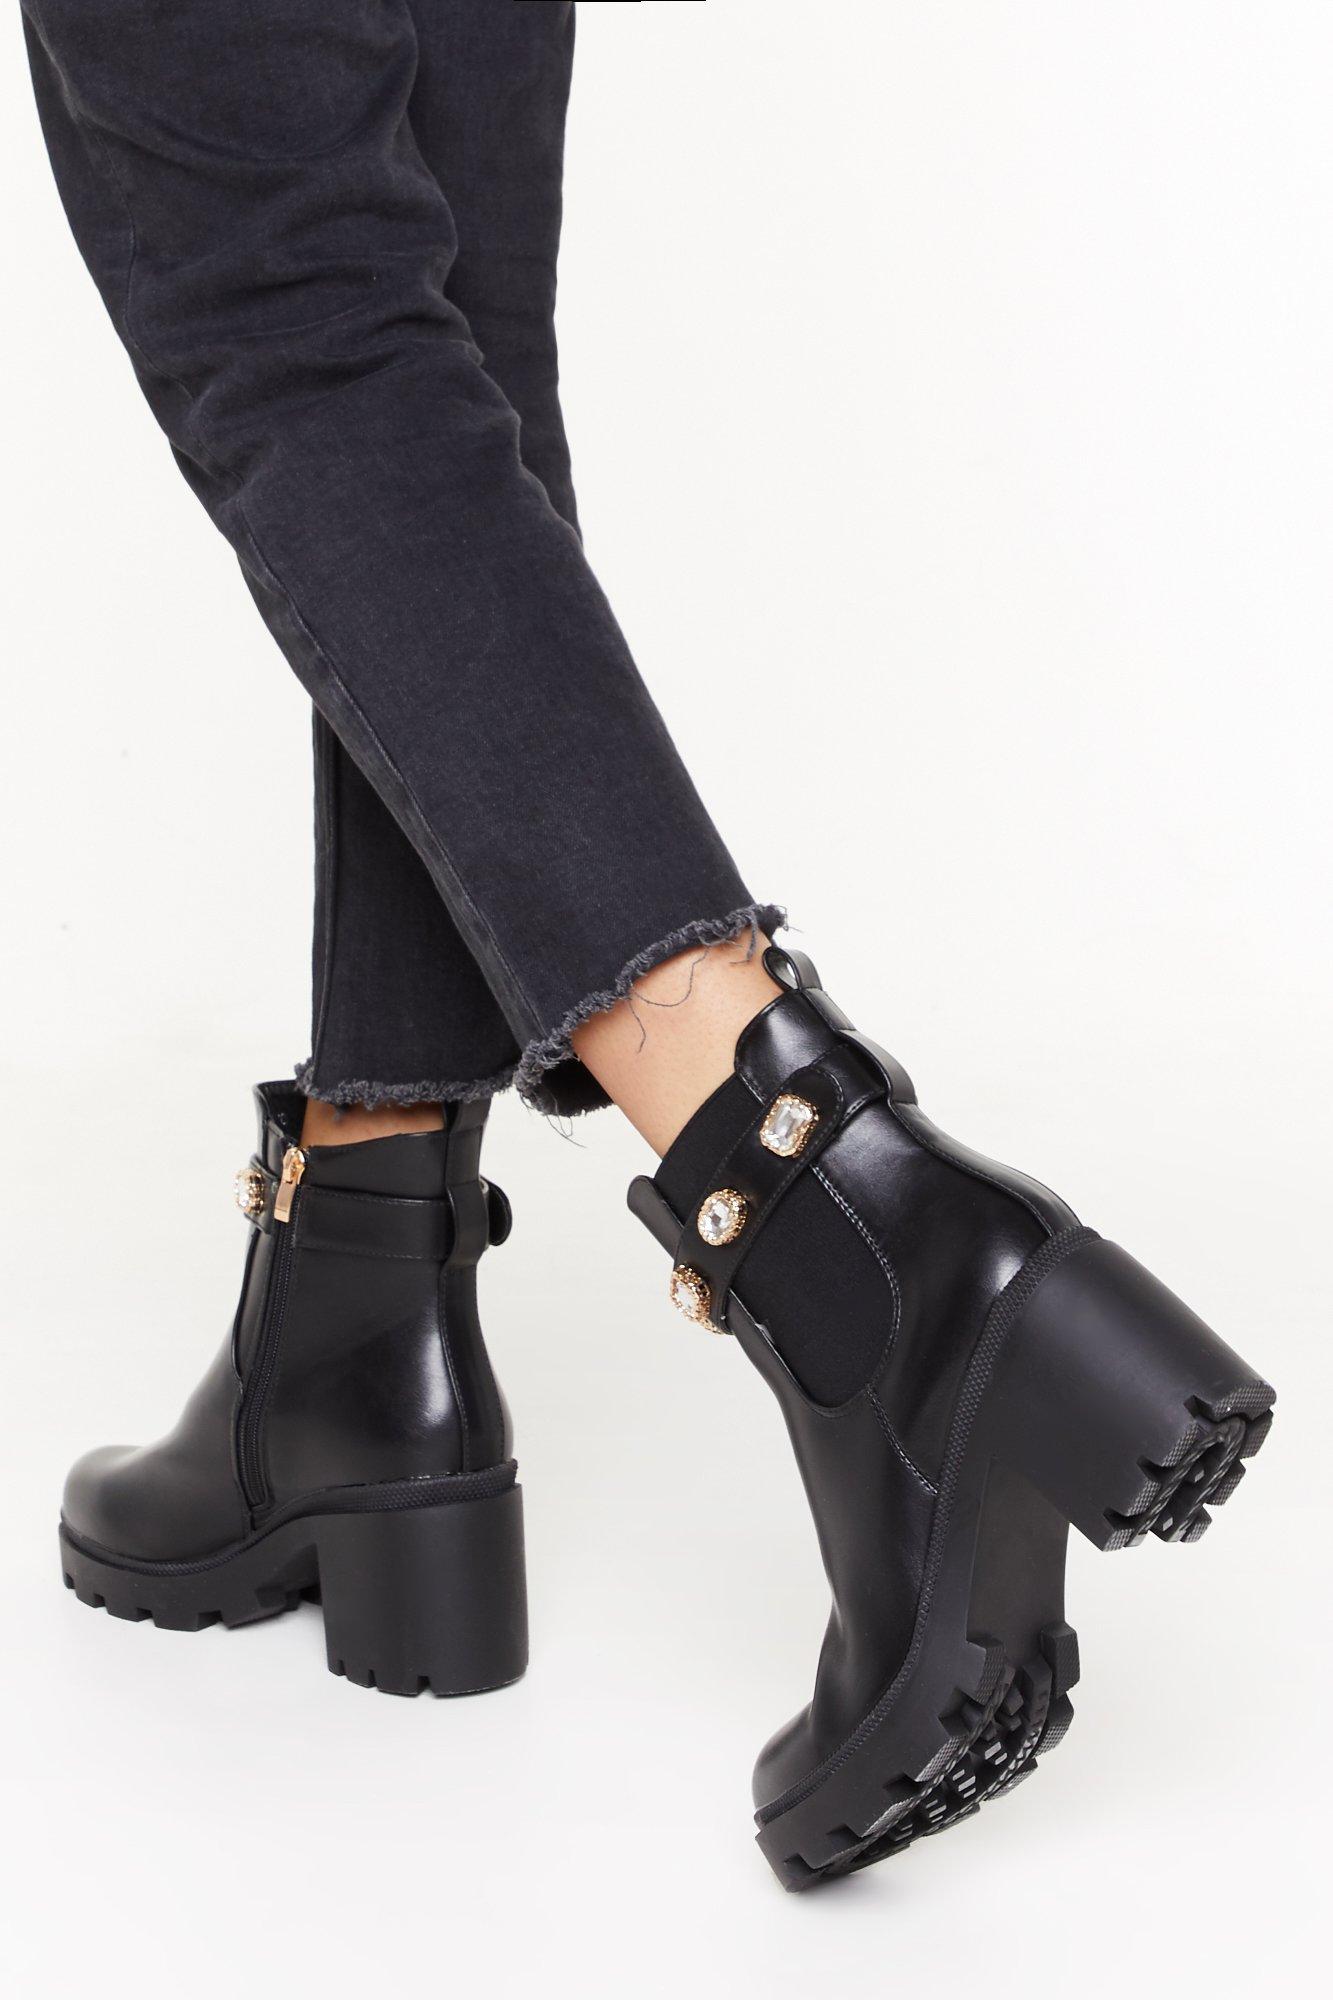 gucci jewel boots